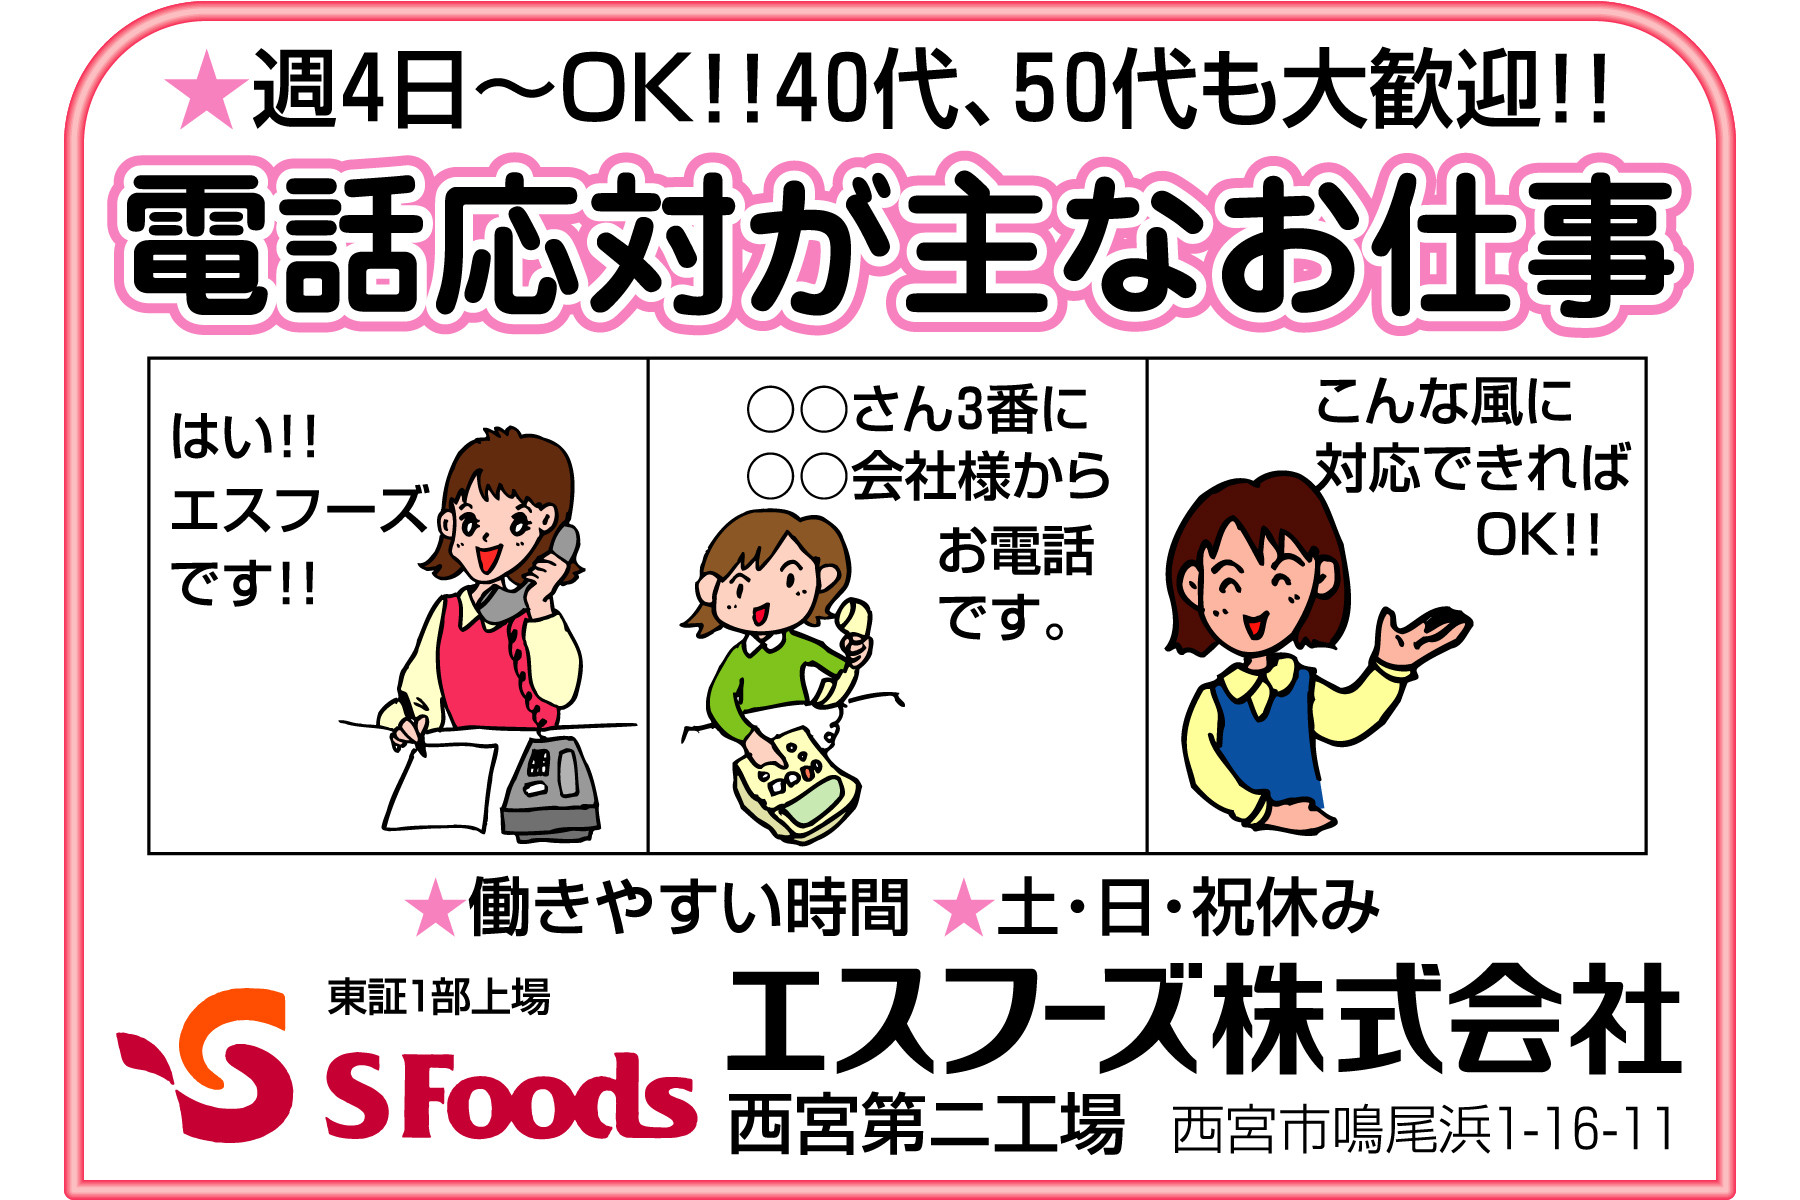 西宮 電話応対 事務 女性歓迎 土日祝休み 求人ふぁいと 西宮を中心とした阪神エリアに特化した求人サービスを実施しております